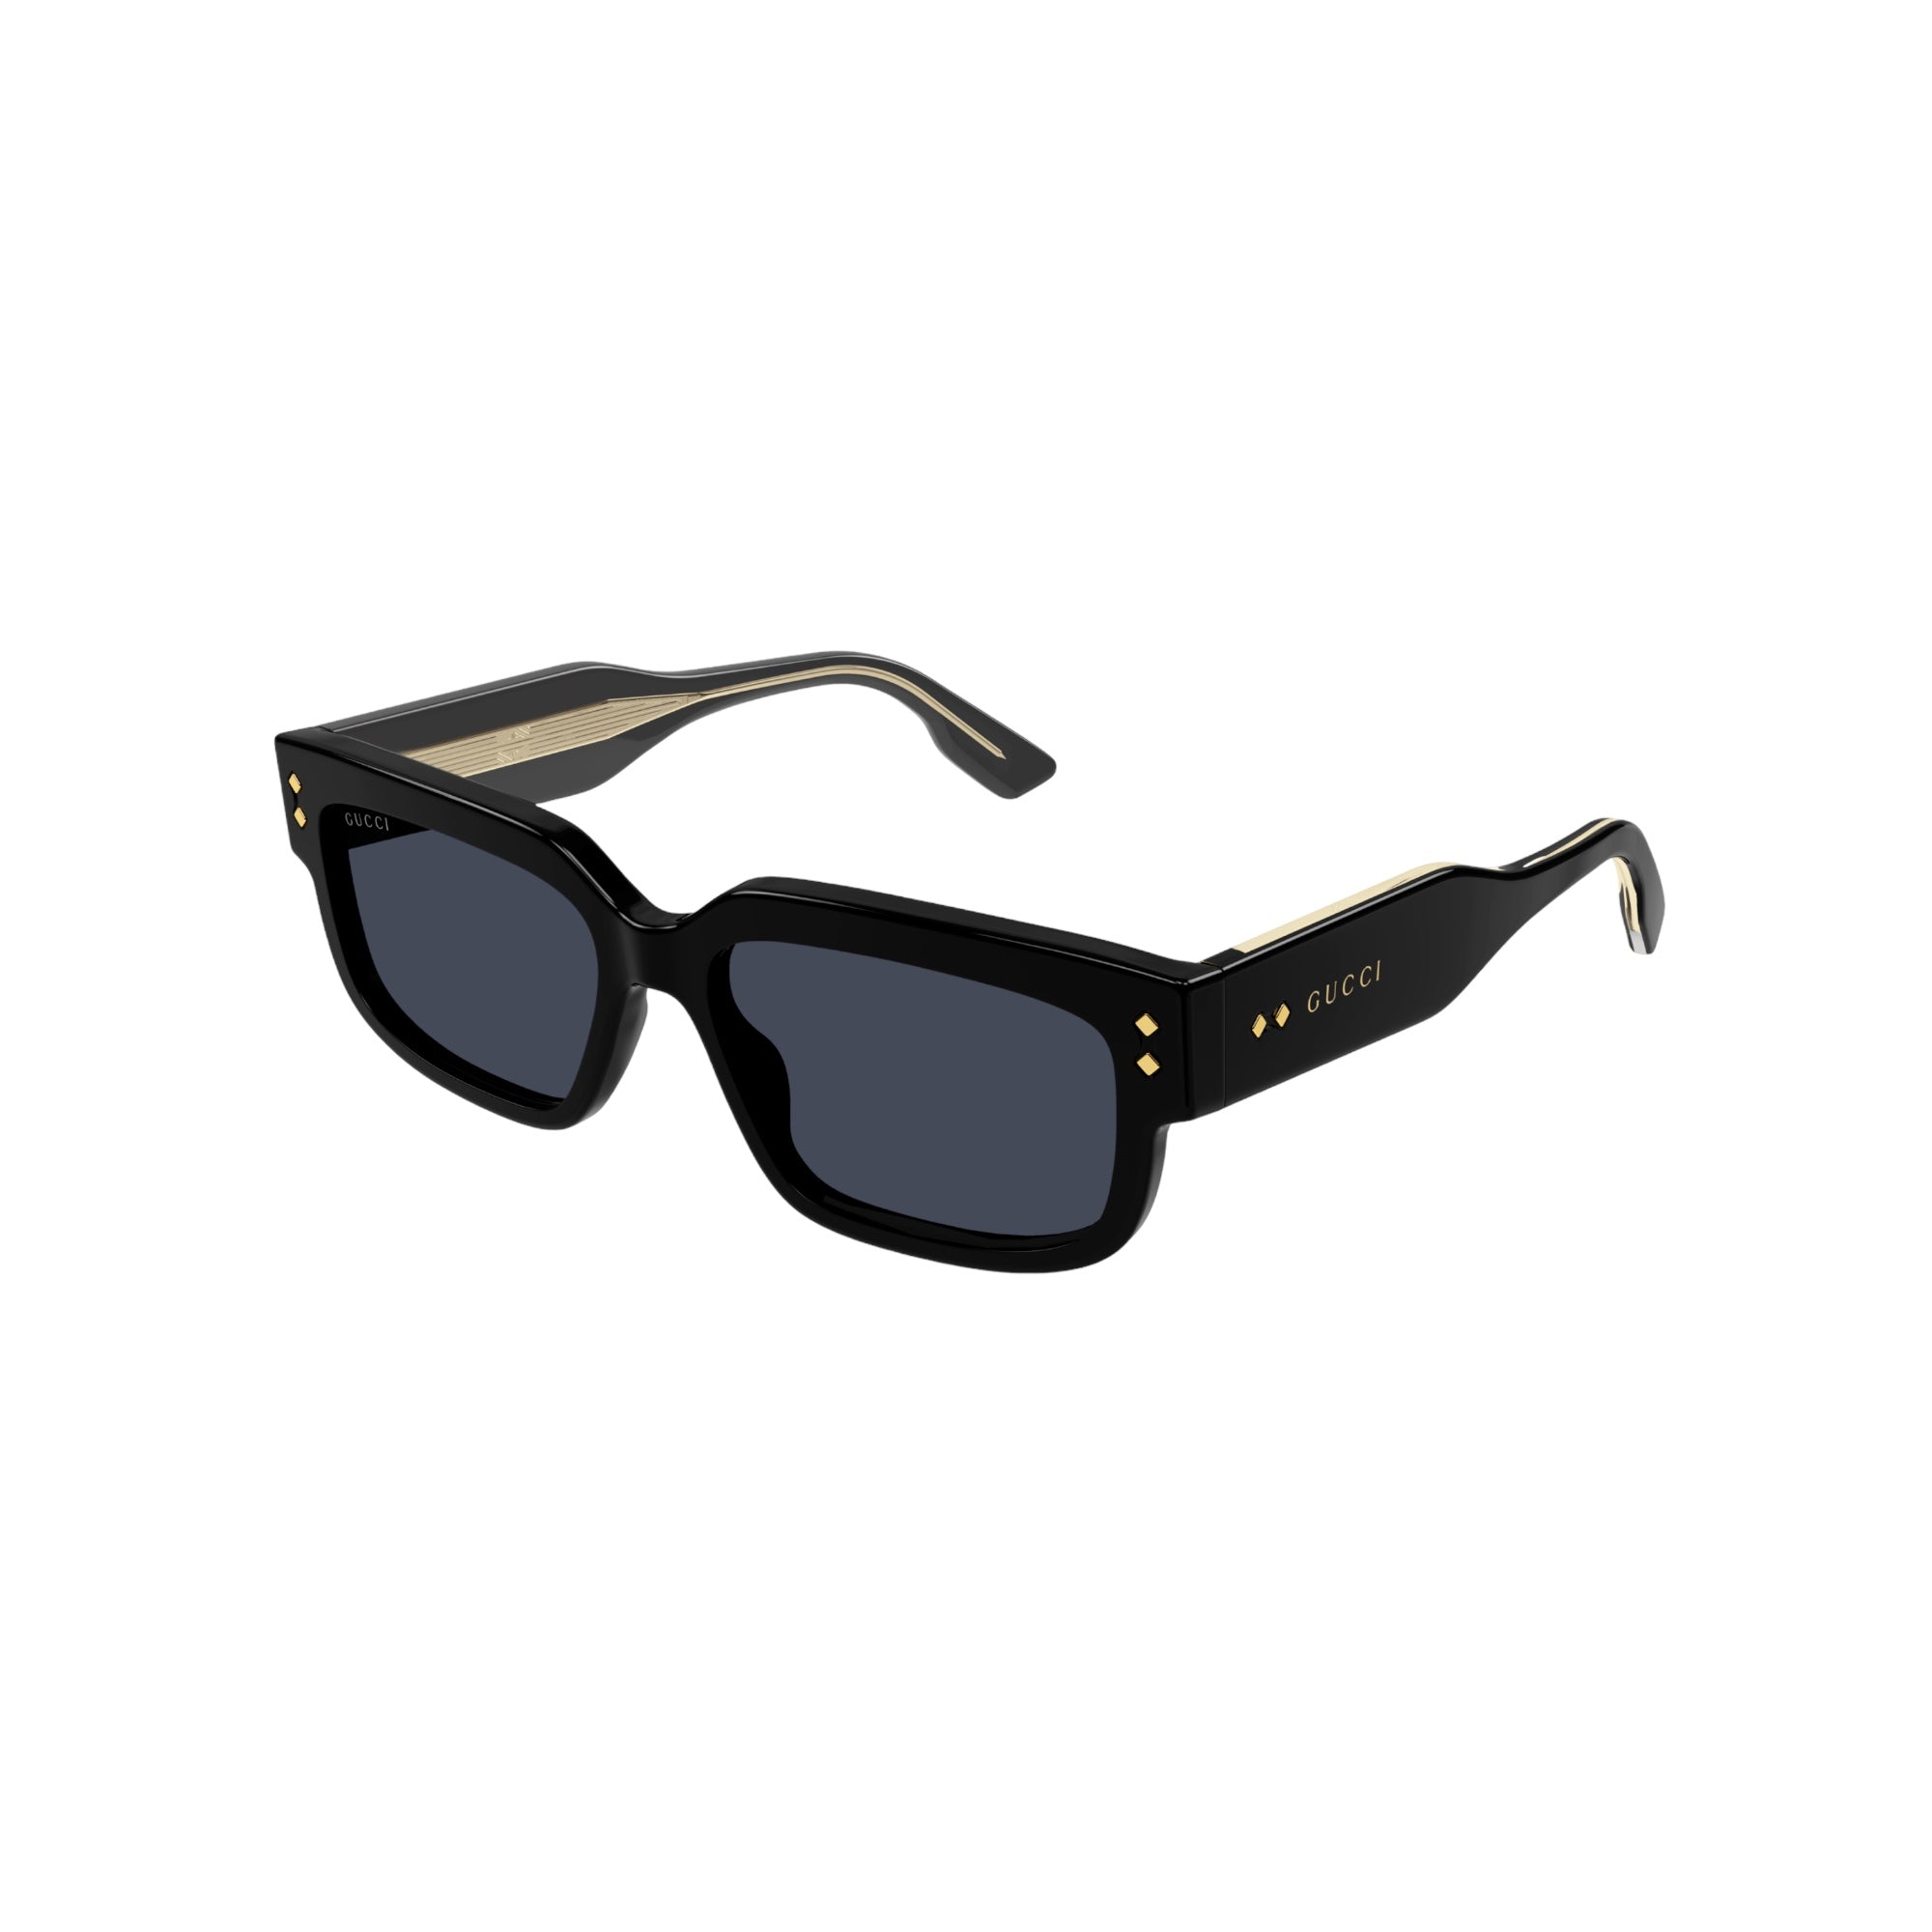 Gucci - sunglasses Gucci GG0957 I LIGHT BLUE OPTIC CAPRI | – Ottica ...